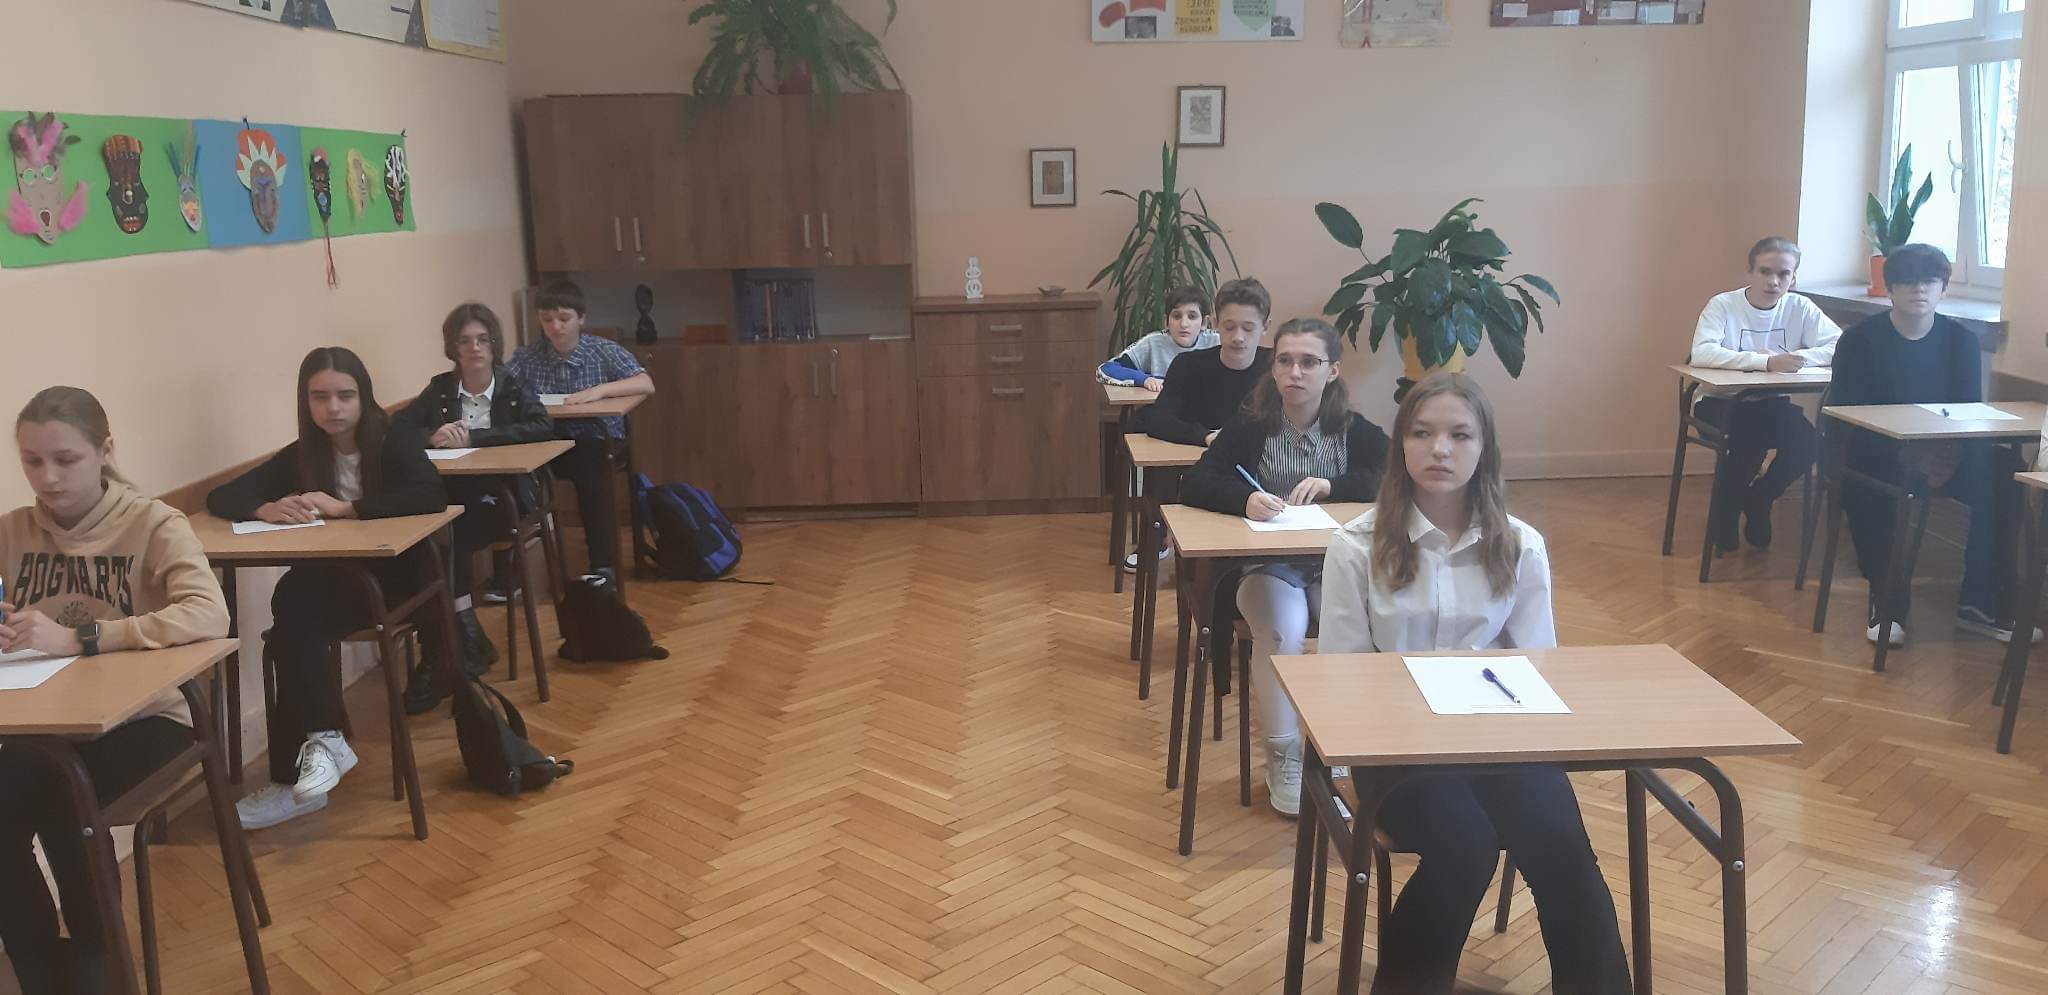 Uczestnicy konkursu- uczniowie reprezentujący rożne szkoły powiatu łęczyńskiego